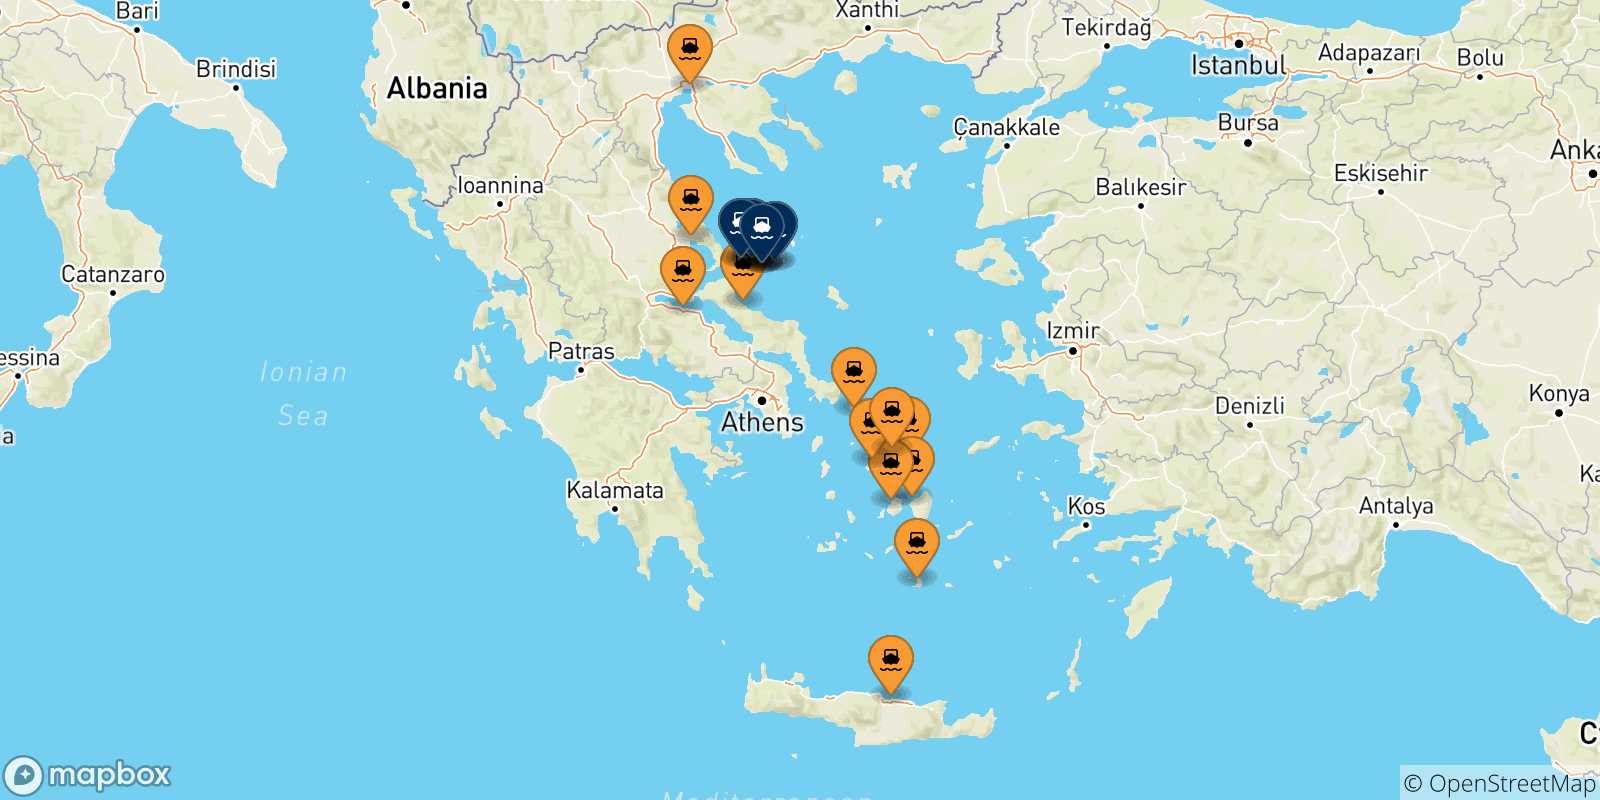 Mappa delle possibili rotte tra la Grecia e le Isole Sporadi